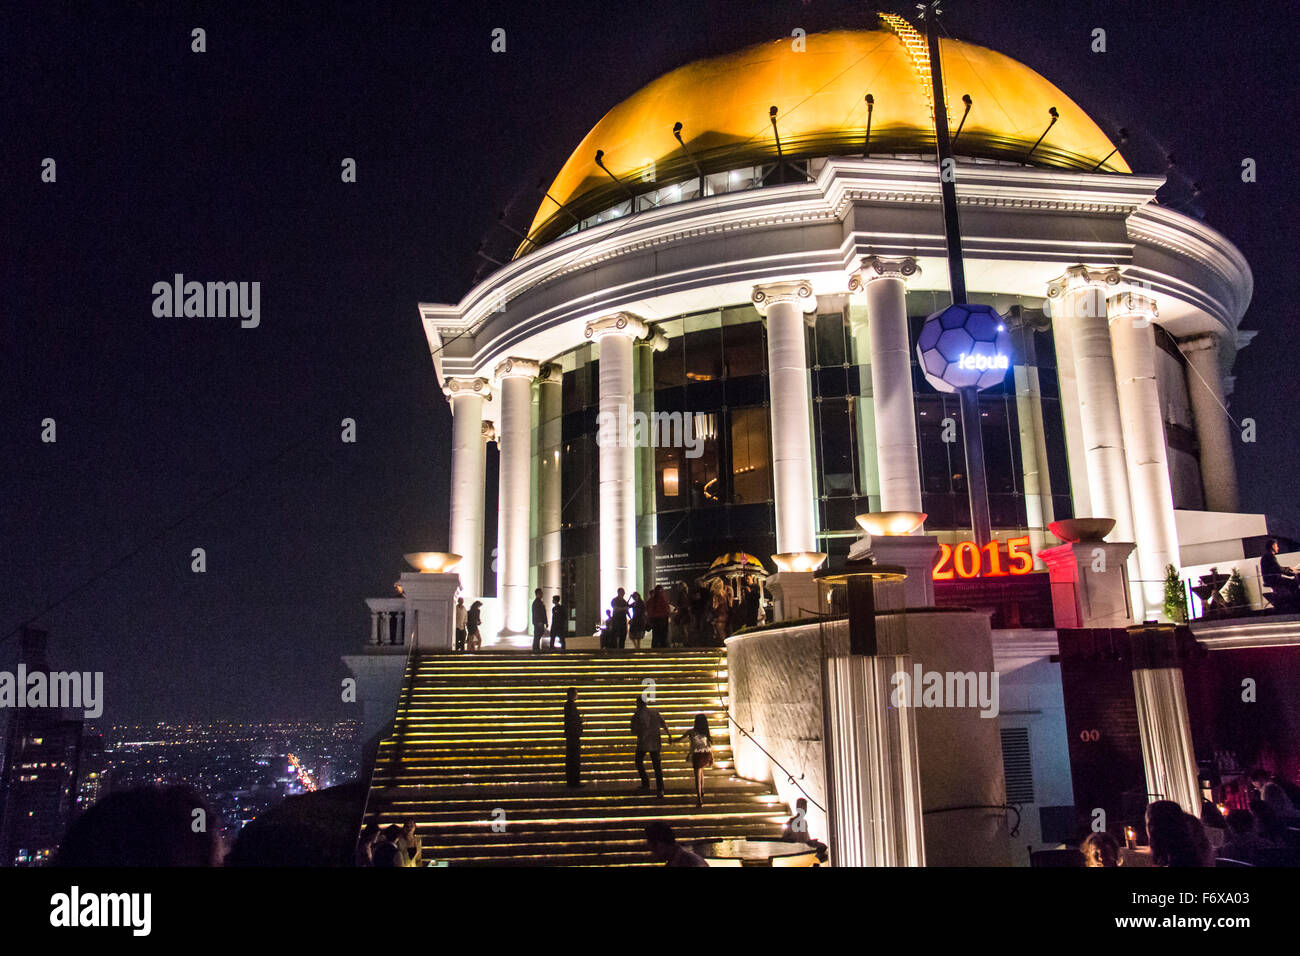 Sirocco Skybar in Bangkok at night Stock Photo